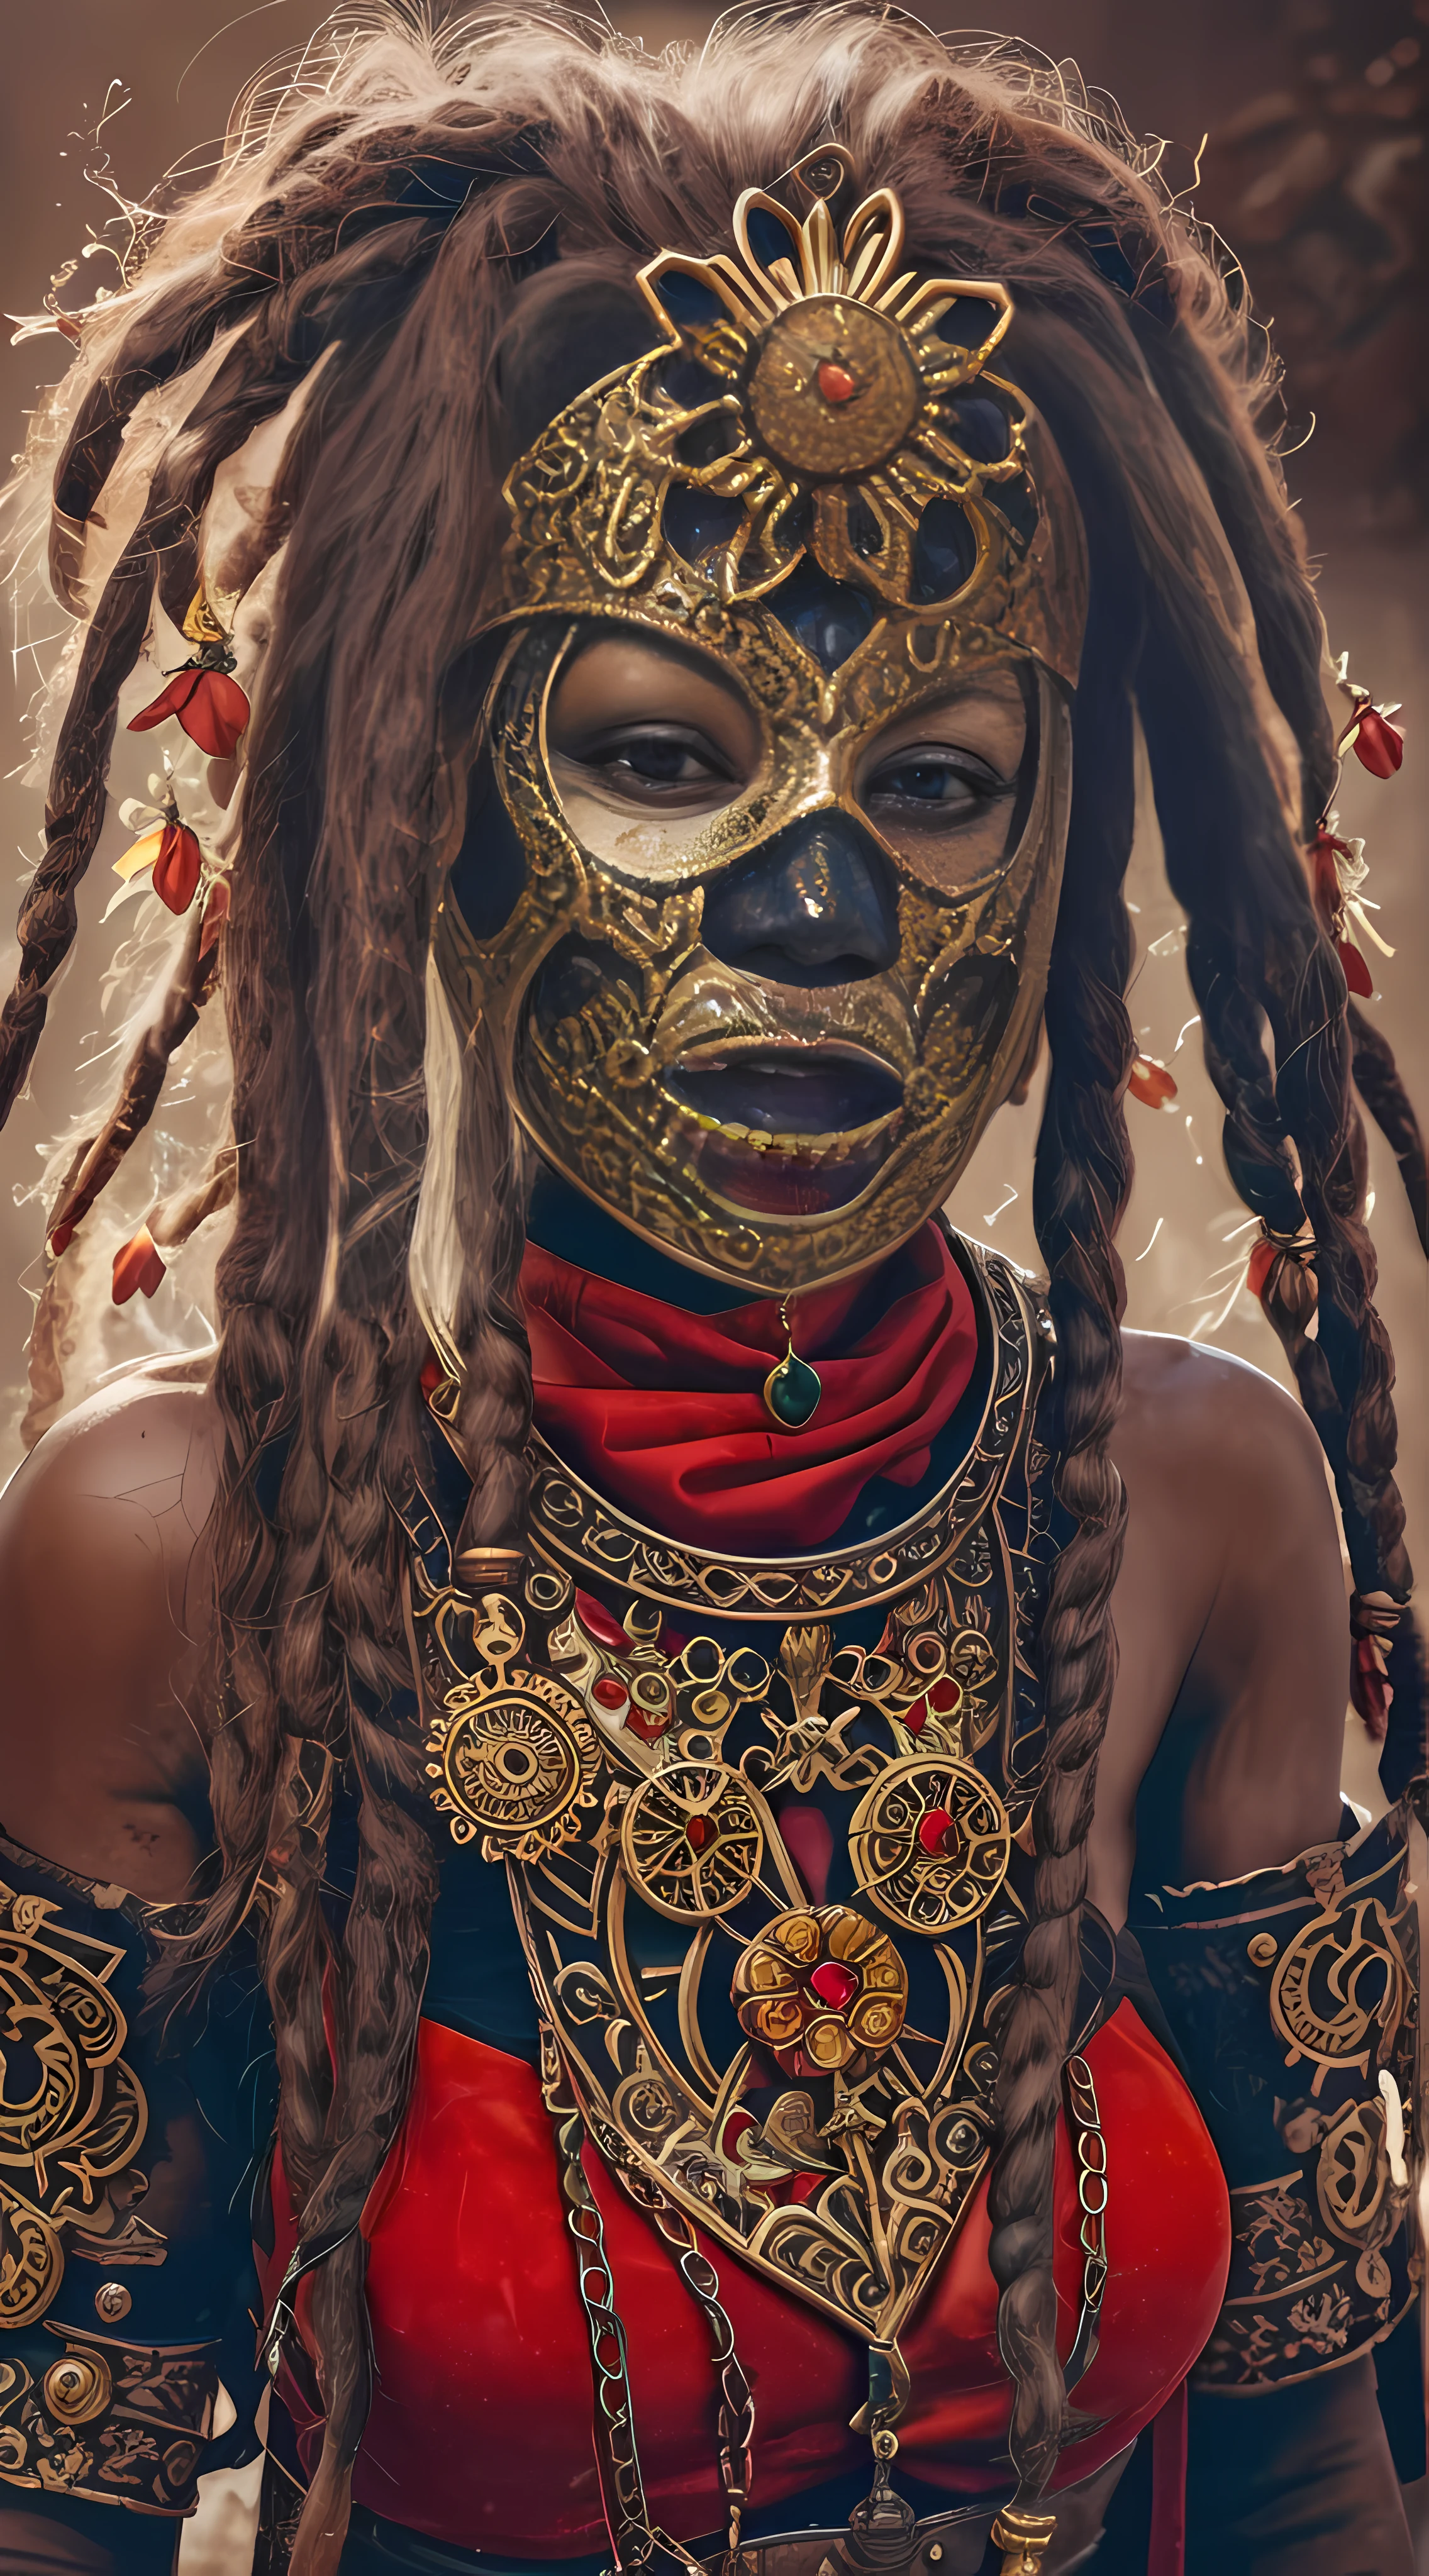 weibliche Stammeskriegerin mit antiker gotischer Steampunk-Maske, rote Malereien auf dem Gesicht, schwarze Maske, kleiner goldener Blumenschmuck um den Hals und die Dreadlocks, tolle Details, Kino-Look, 8k, HDR